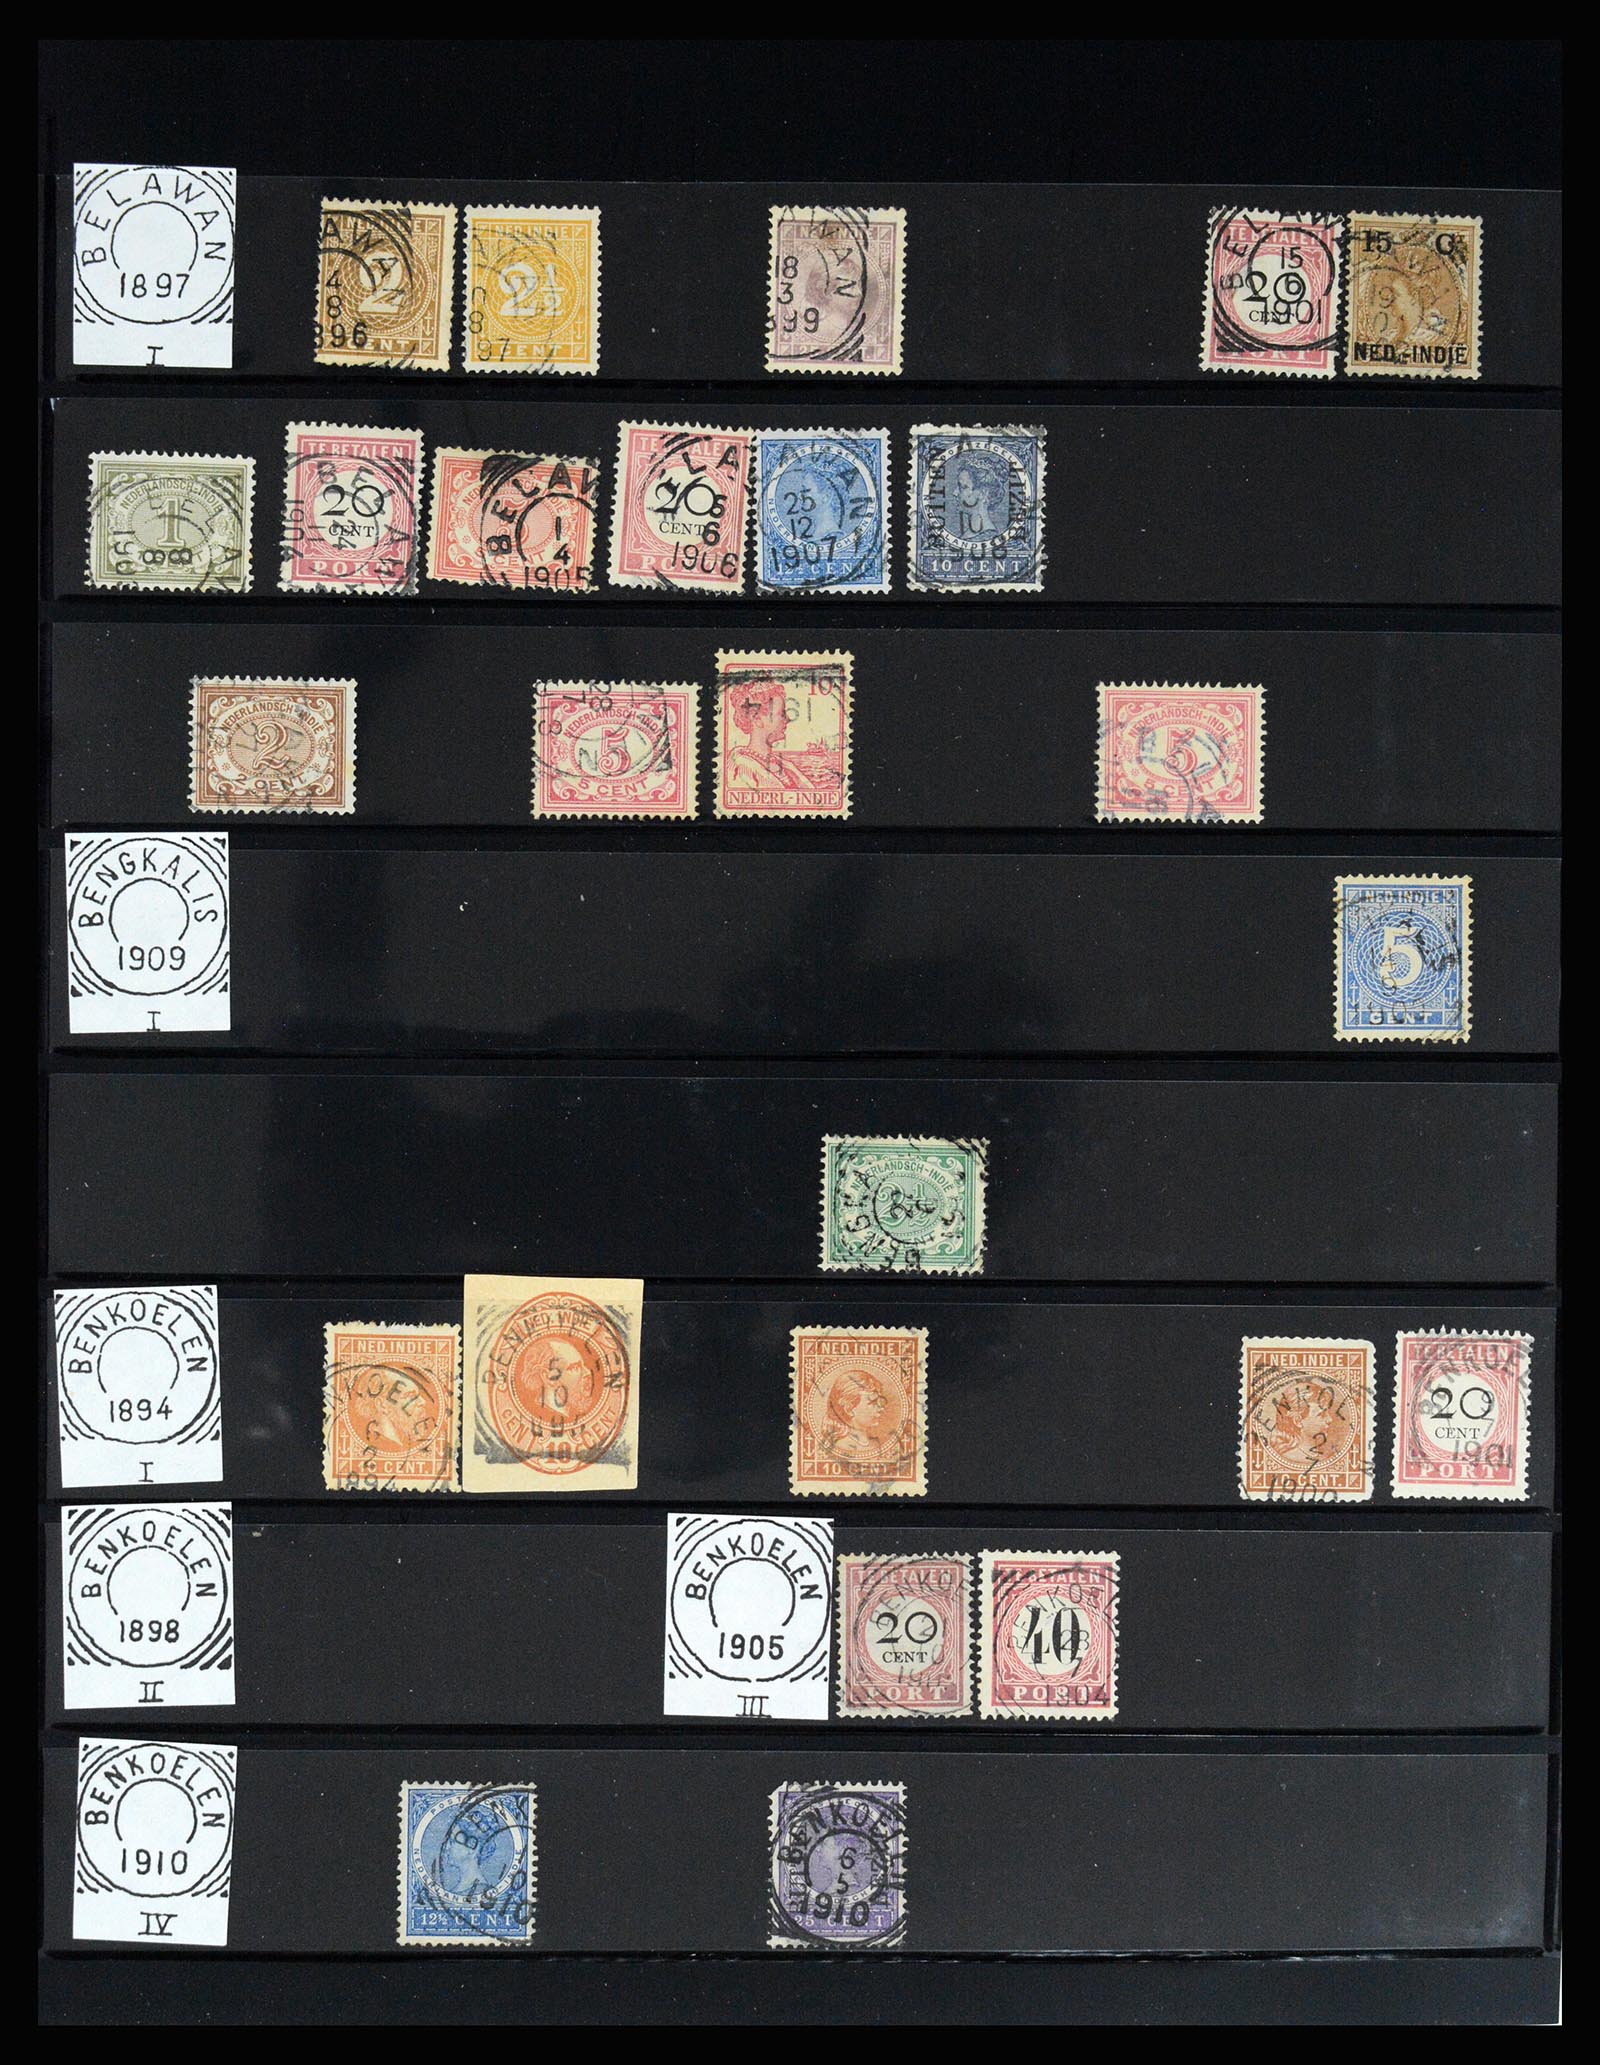 36512 108 - Stamp collection 36512 Nederlands Indië stempels 1872-1930.